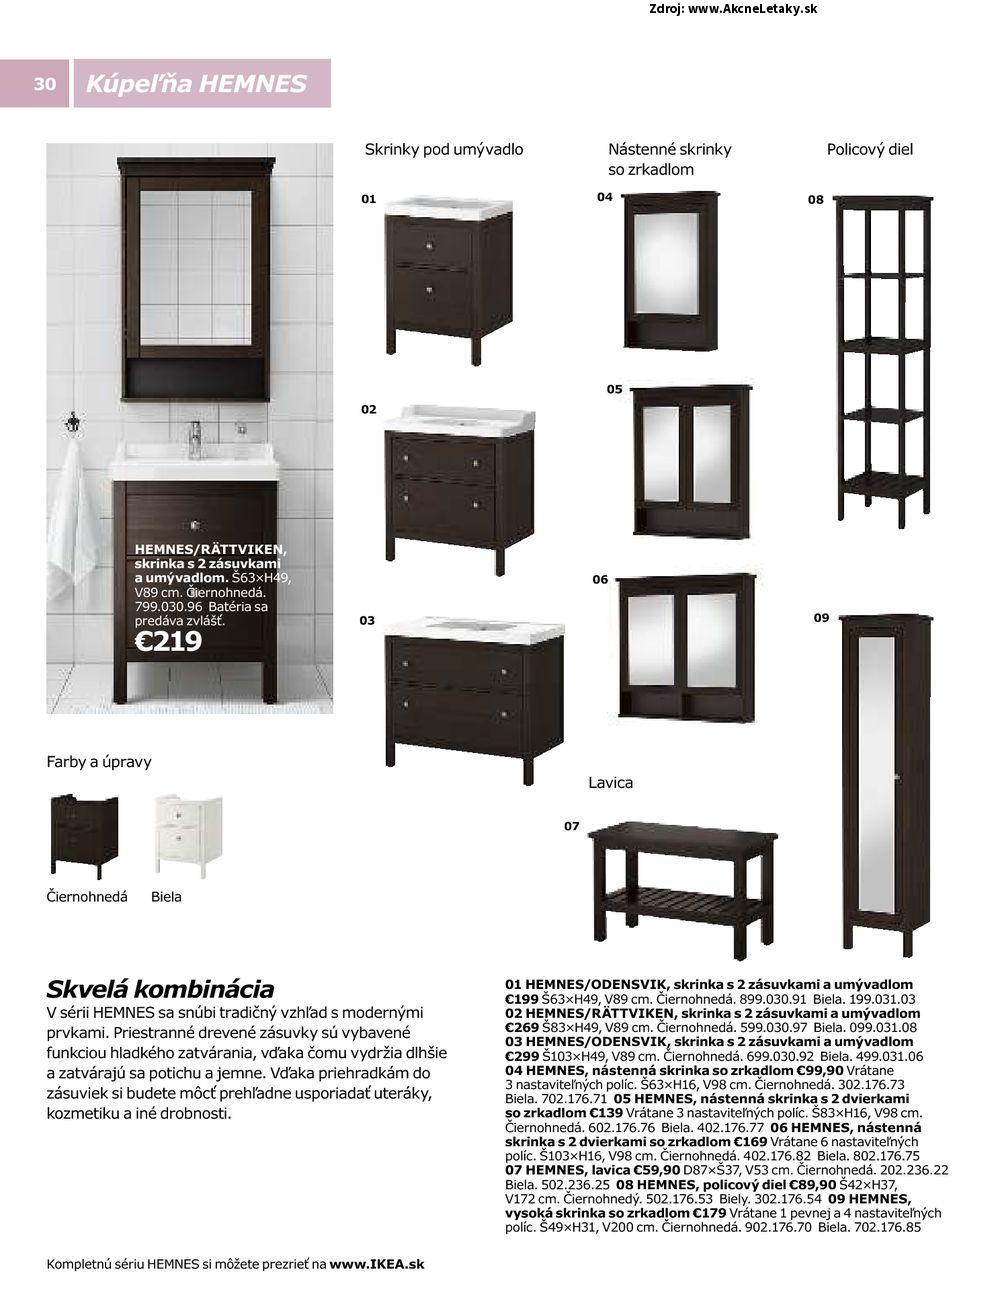 Letk Ikea - strana 30